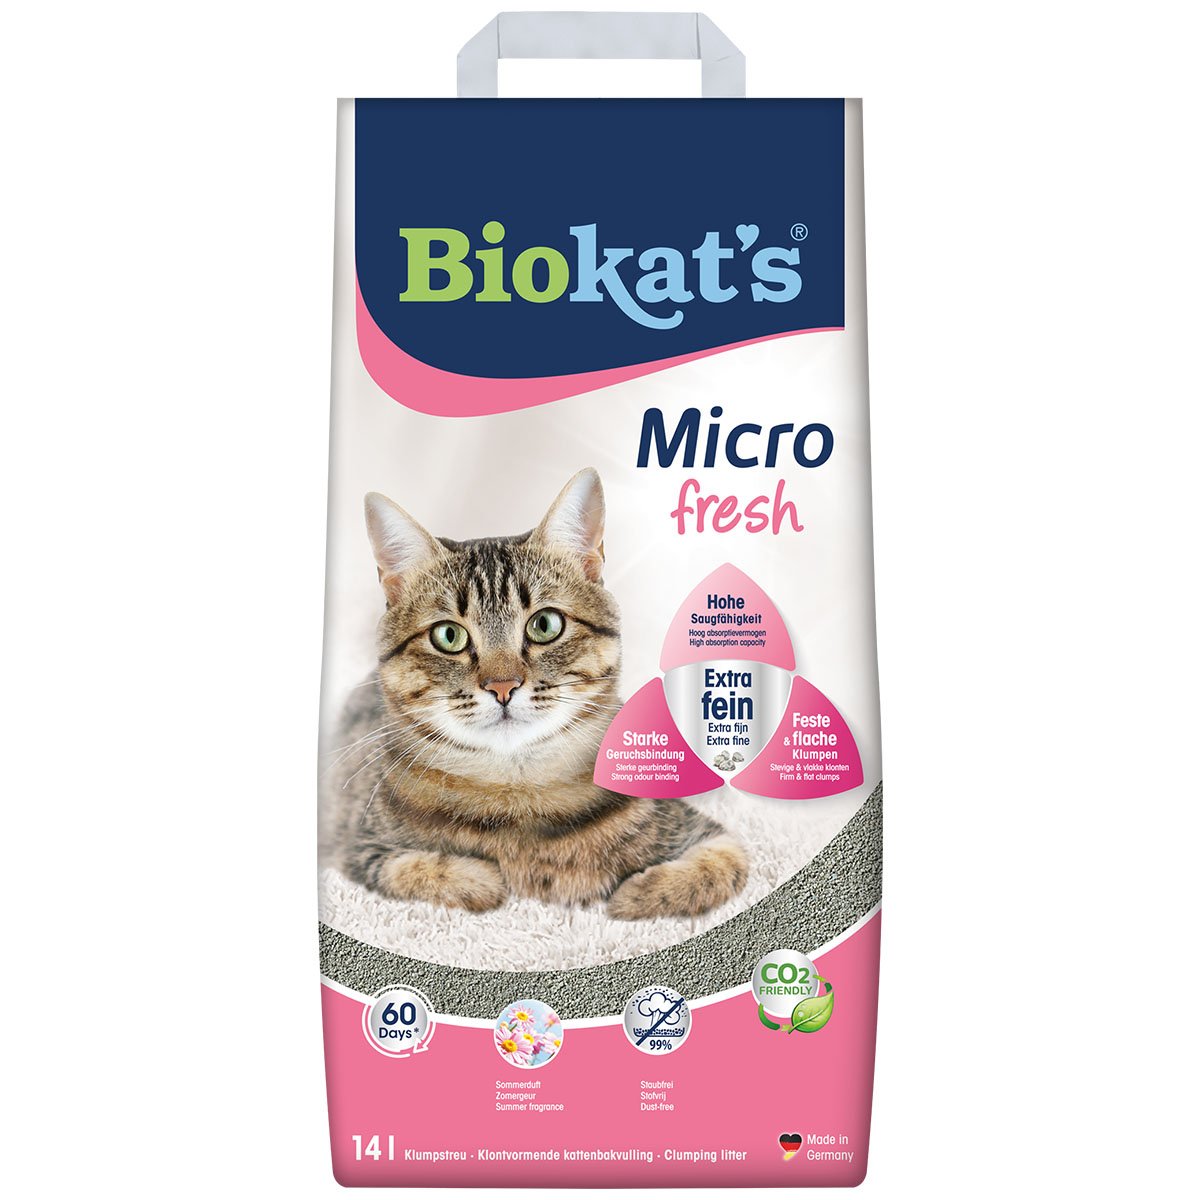 Biokat’s Micro Fresh 14 L